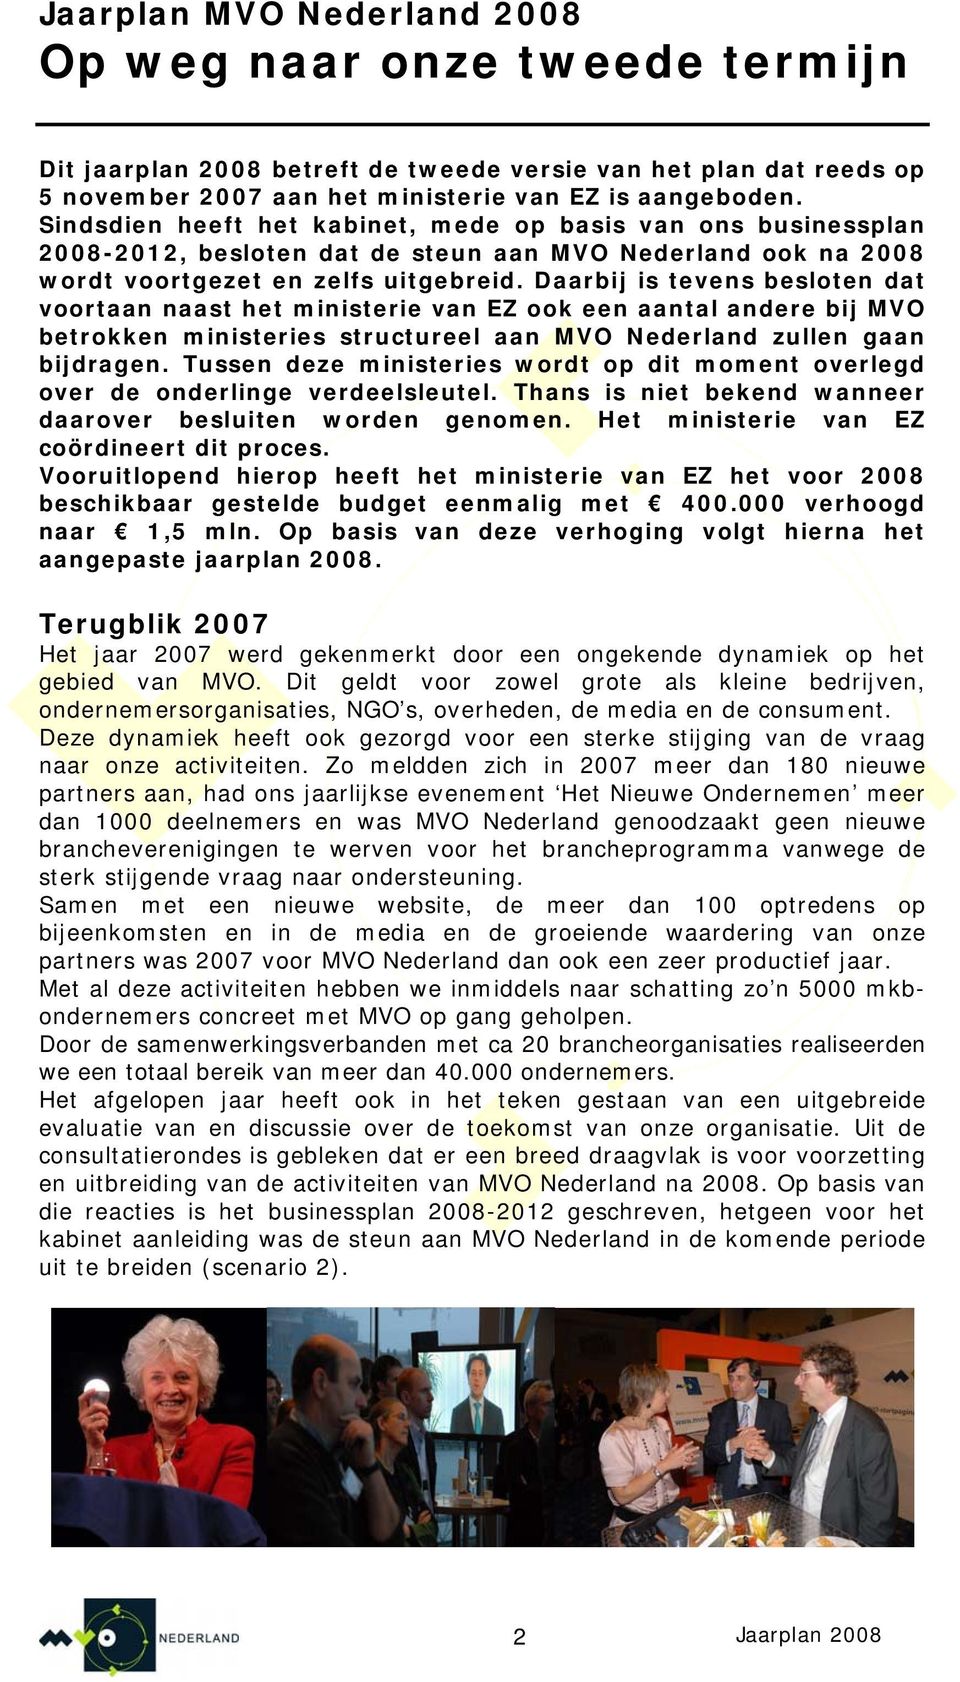 Daarbij is tevens besloten dat voortaan naast het ministerie van EZ ook een aantal andere bij MVO betrokken ministeries structureel aan MVO Nederland zullen gaan bijdragen.